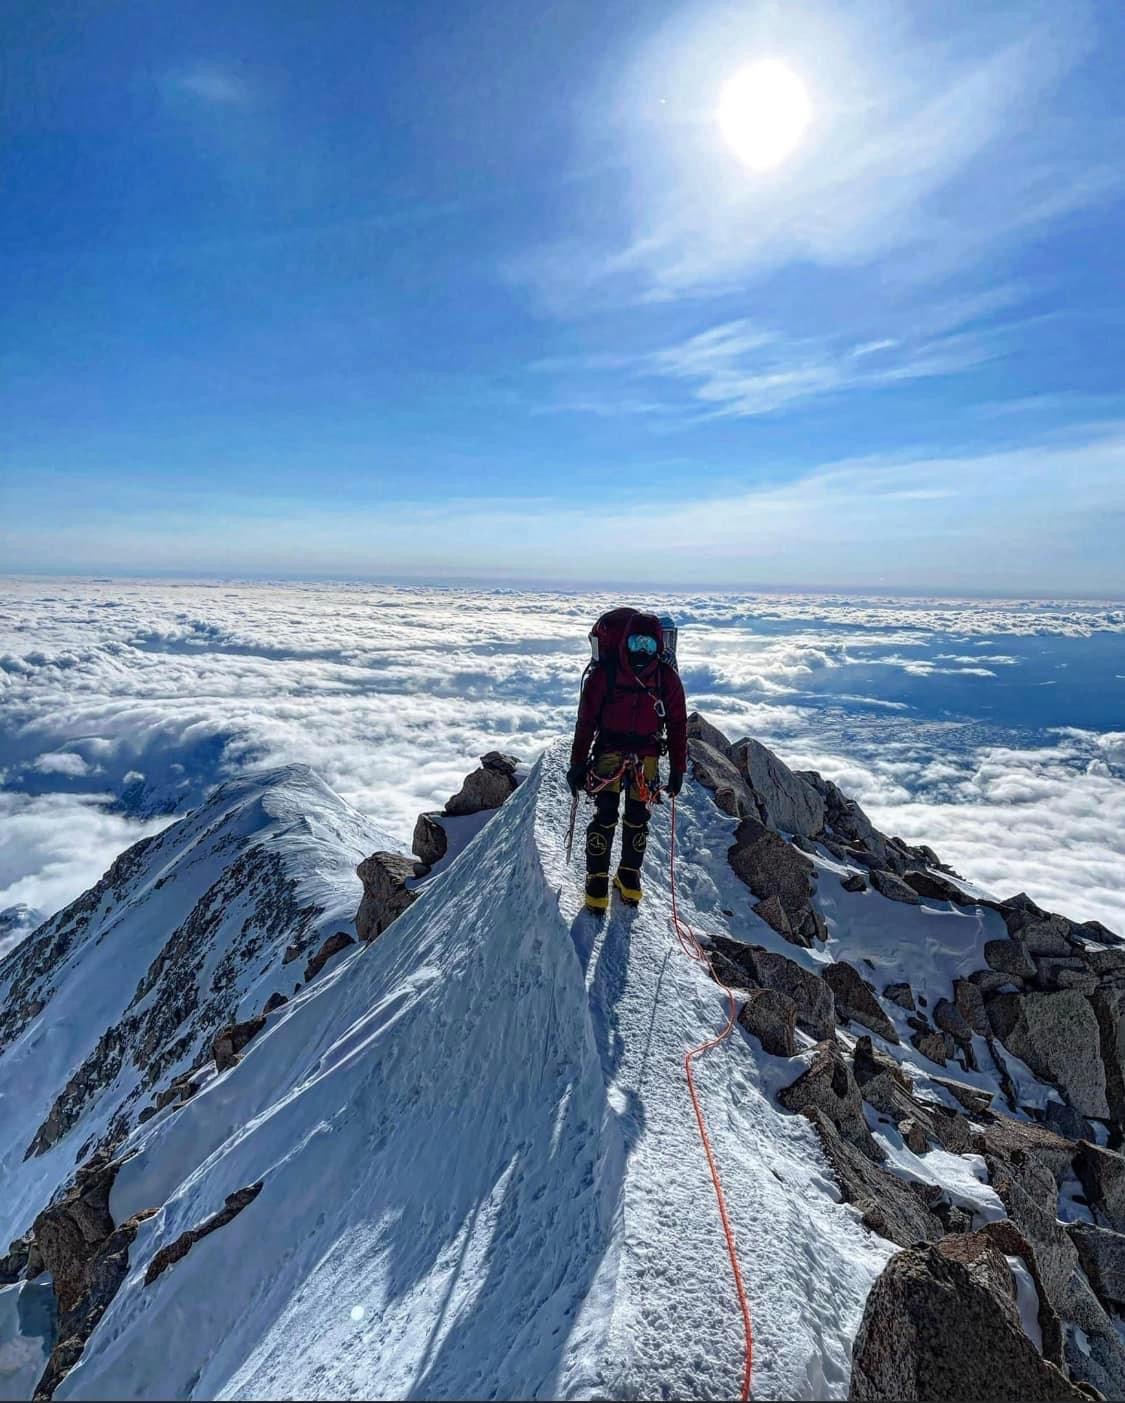 A roped climber walks a narrow ridge